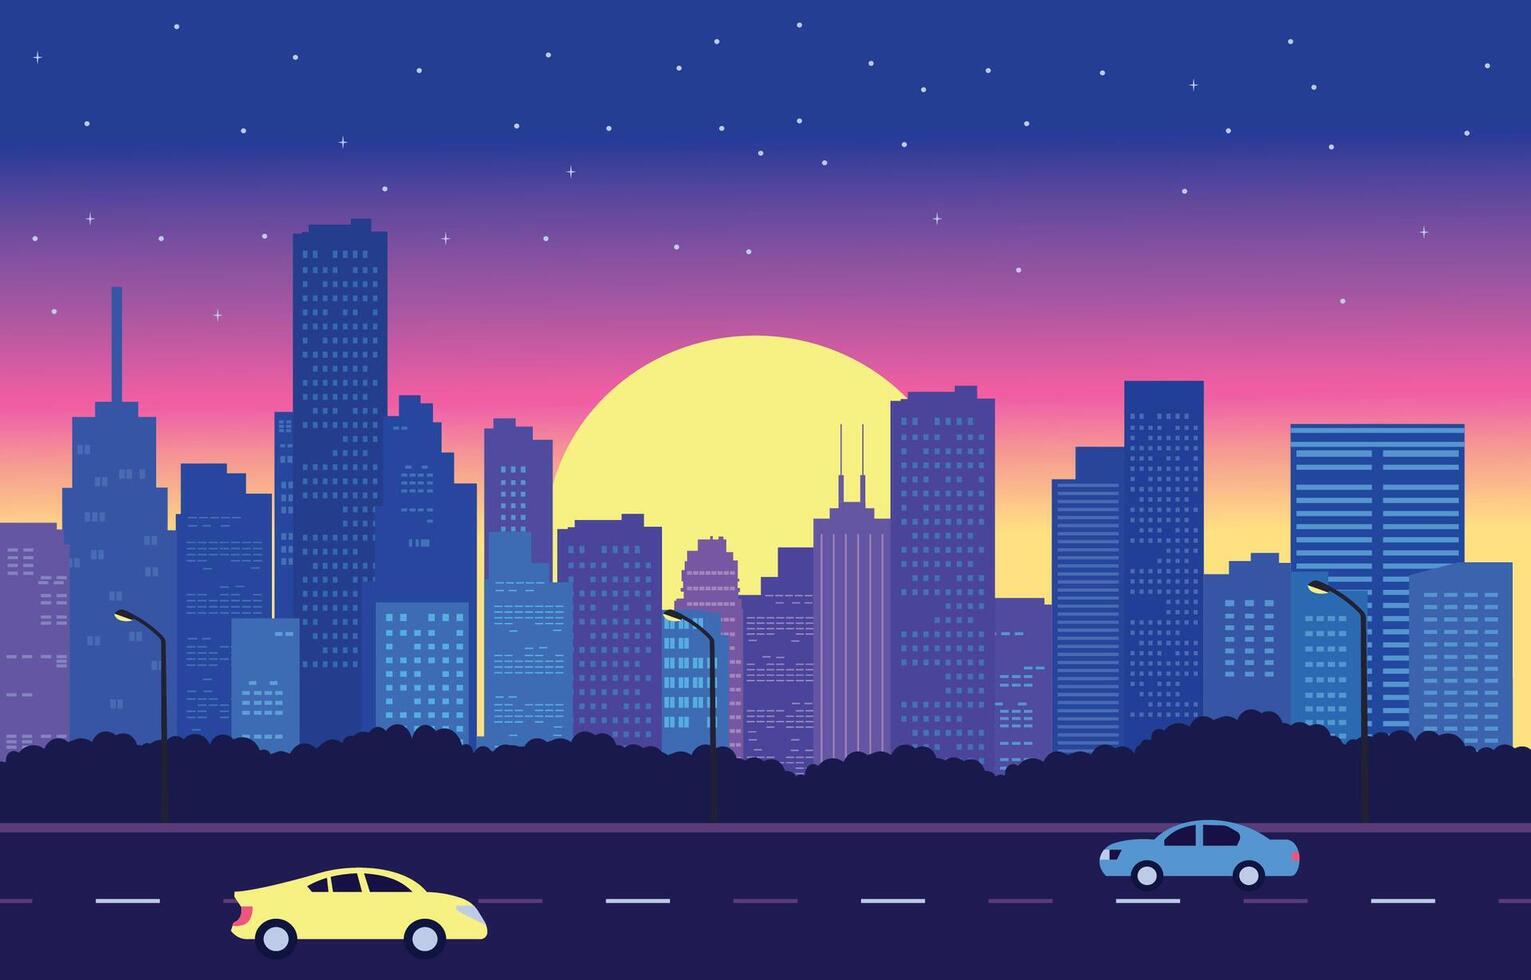 trafik väg i stad på solnedgång med stadsbild byggnad platt design illustration vektor